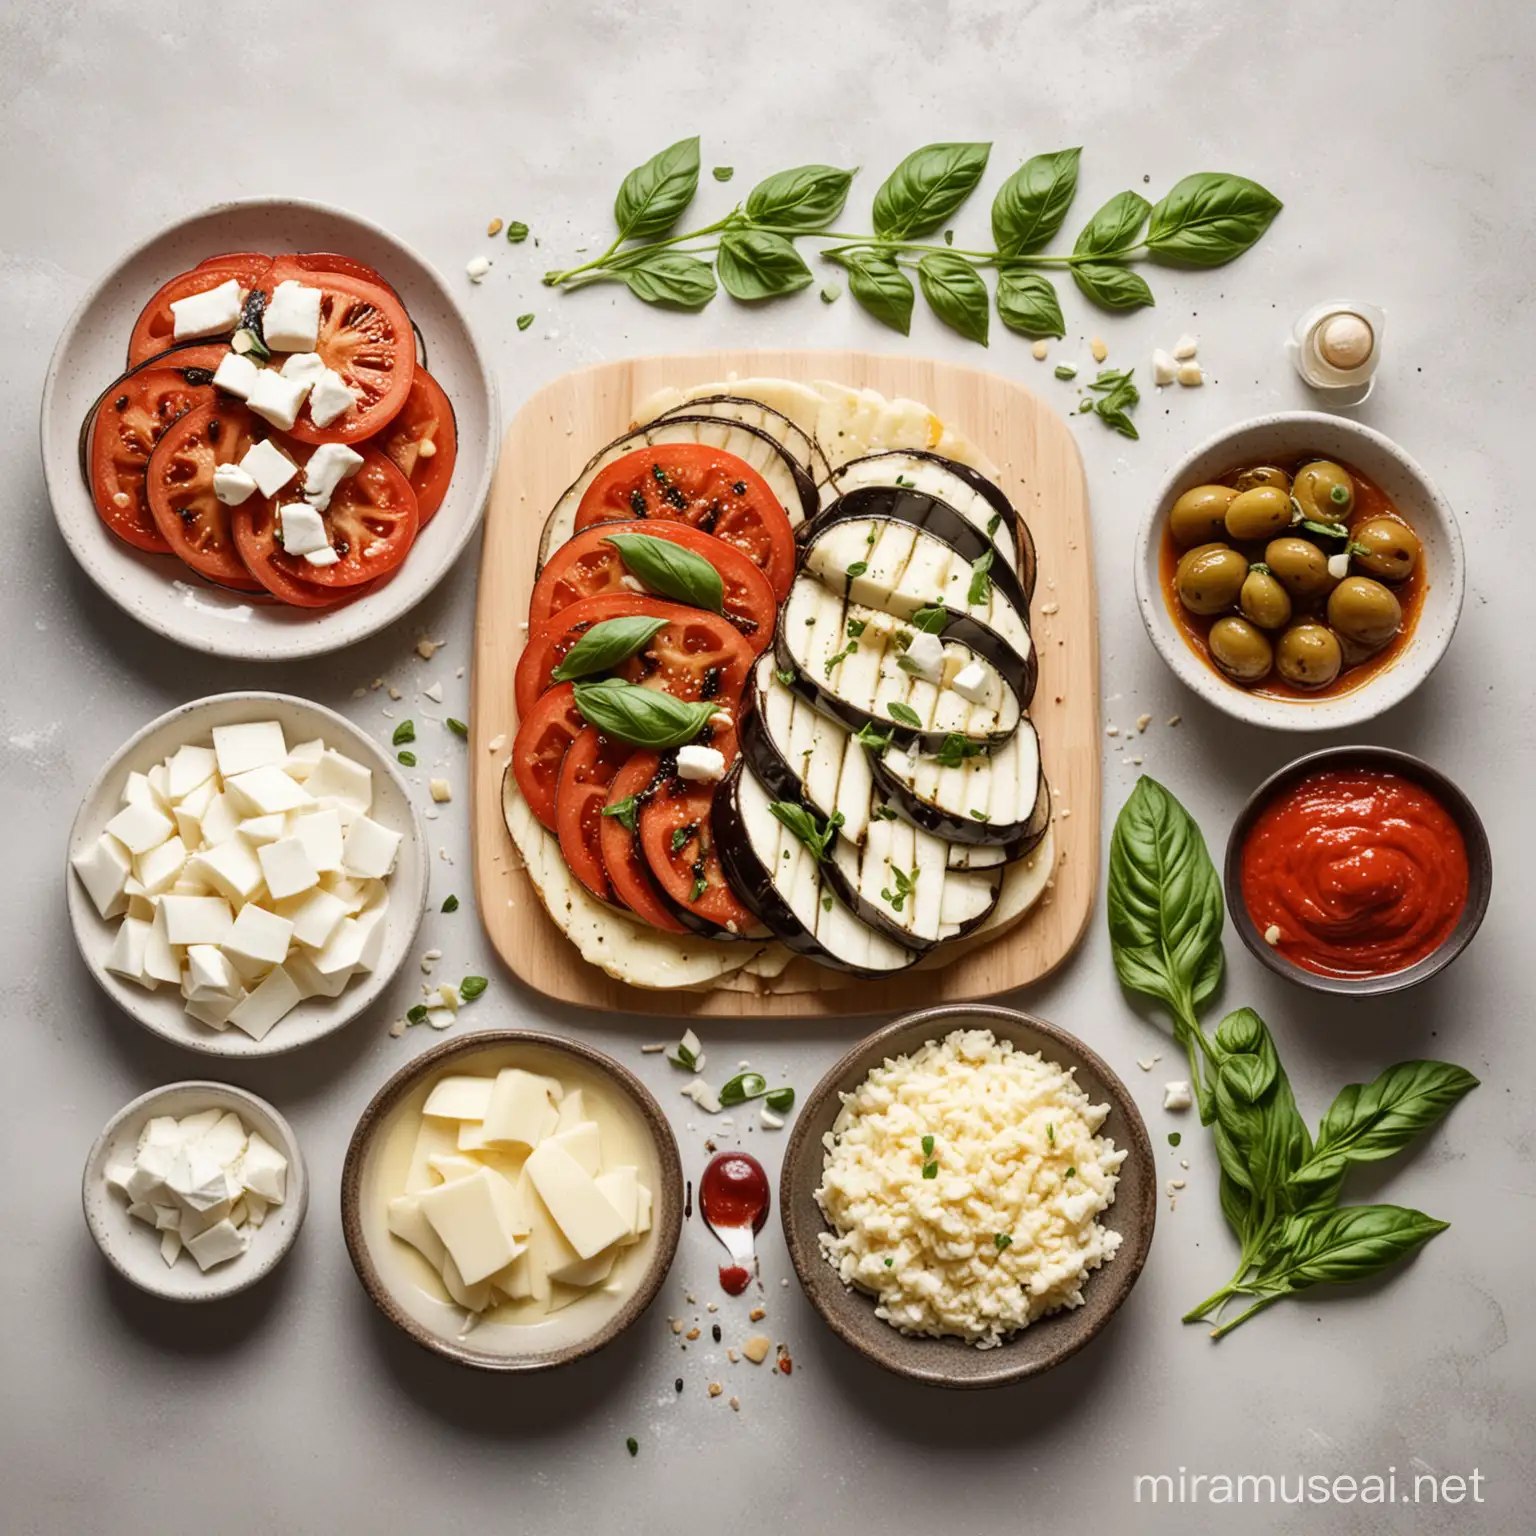 Баклажан, чеснок, томатное пюре, моцарелла, базилик, пармезан, оливковое масло
все продукты лежат отдельно друг от друга на светлом фоне
